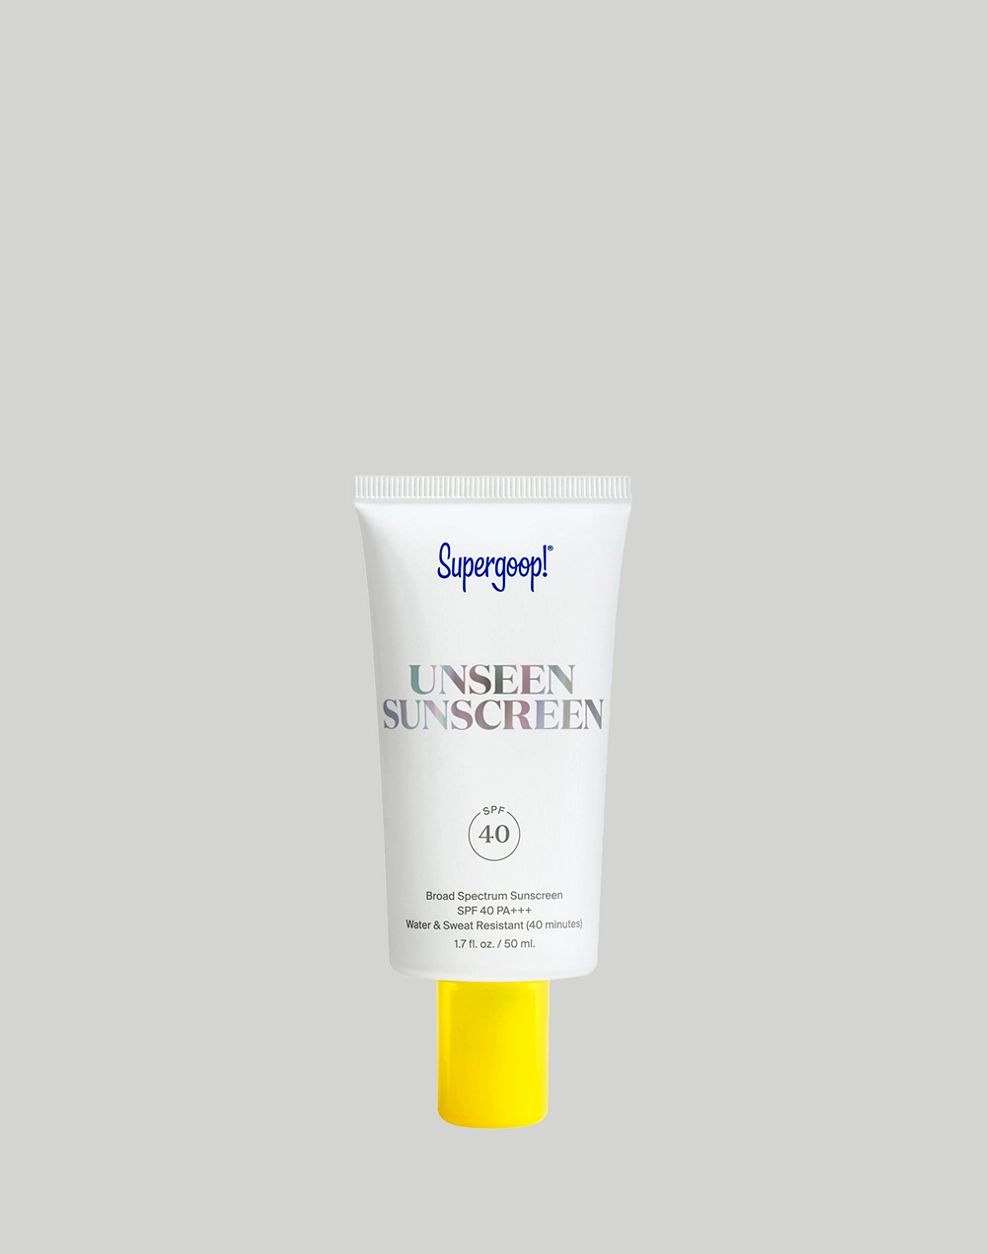 Supergoop! Unseen Sunscreen | Madewell